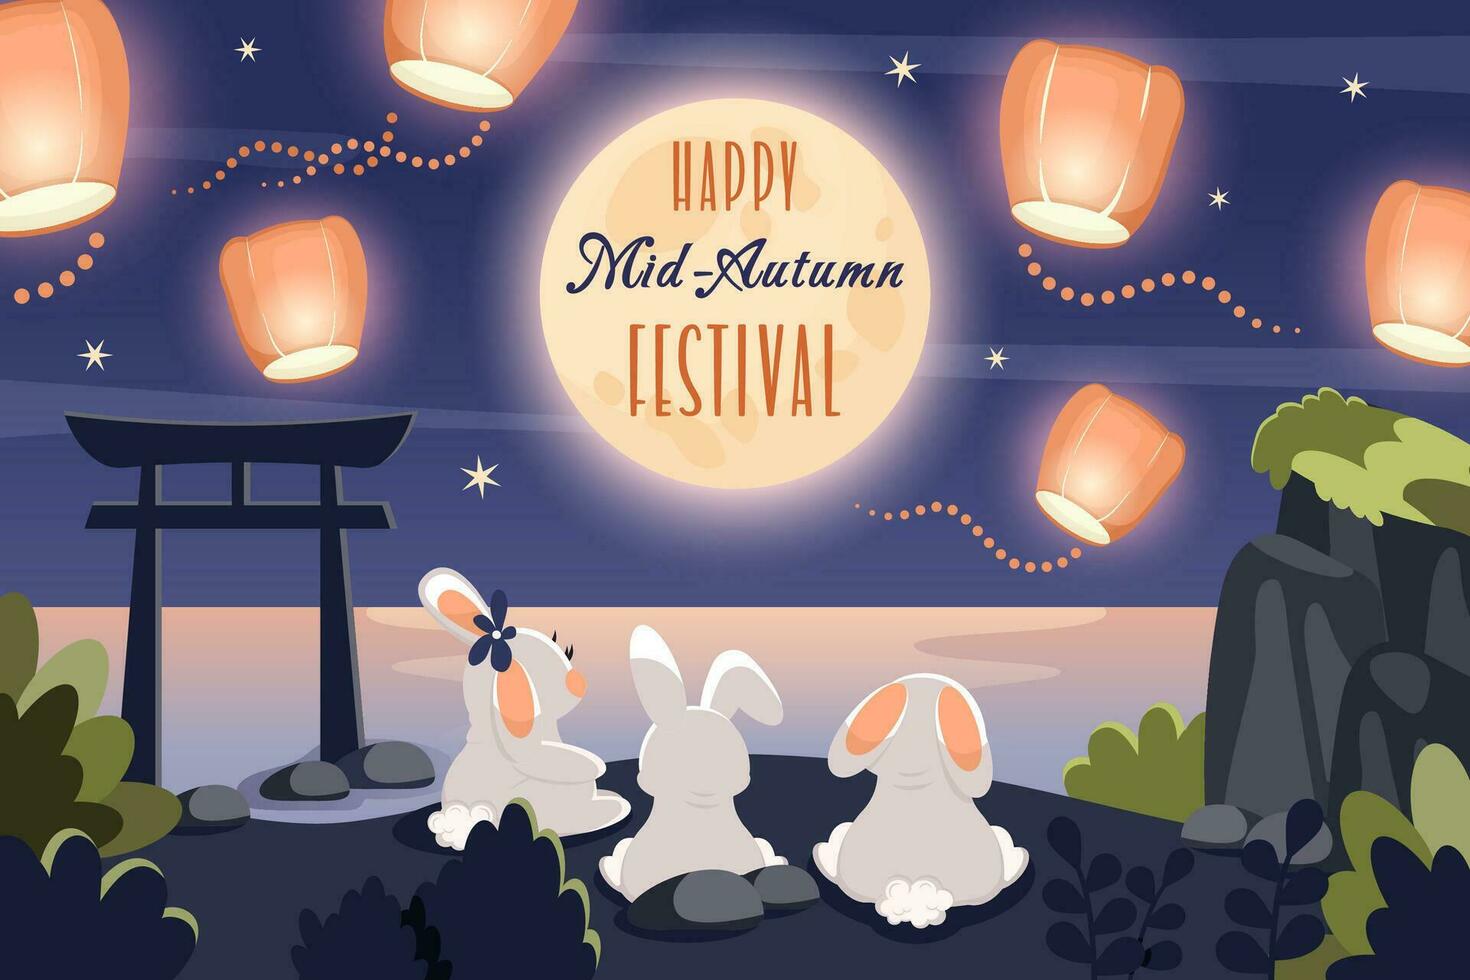 contento metà autunno Festival. carino conigli guardare a Luna e Cinese lanterne. saluto carta con testo per mooncake Festival, Cinese, coreano, asiatico tradizionale vacanza. vettore cartone animato illustrazione.